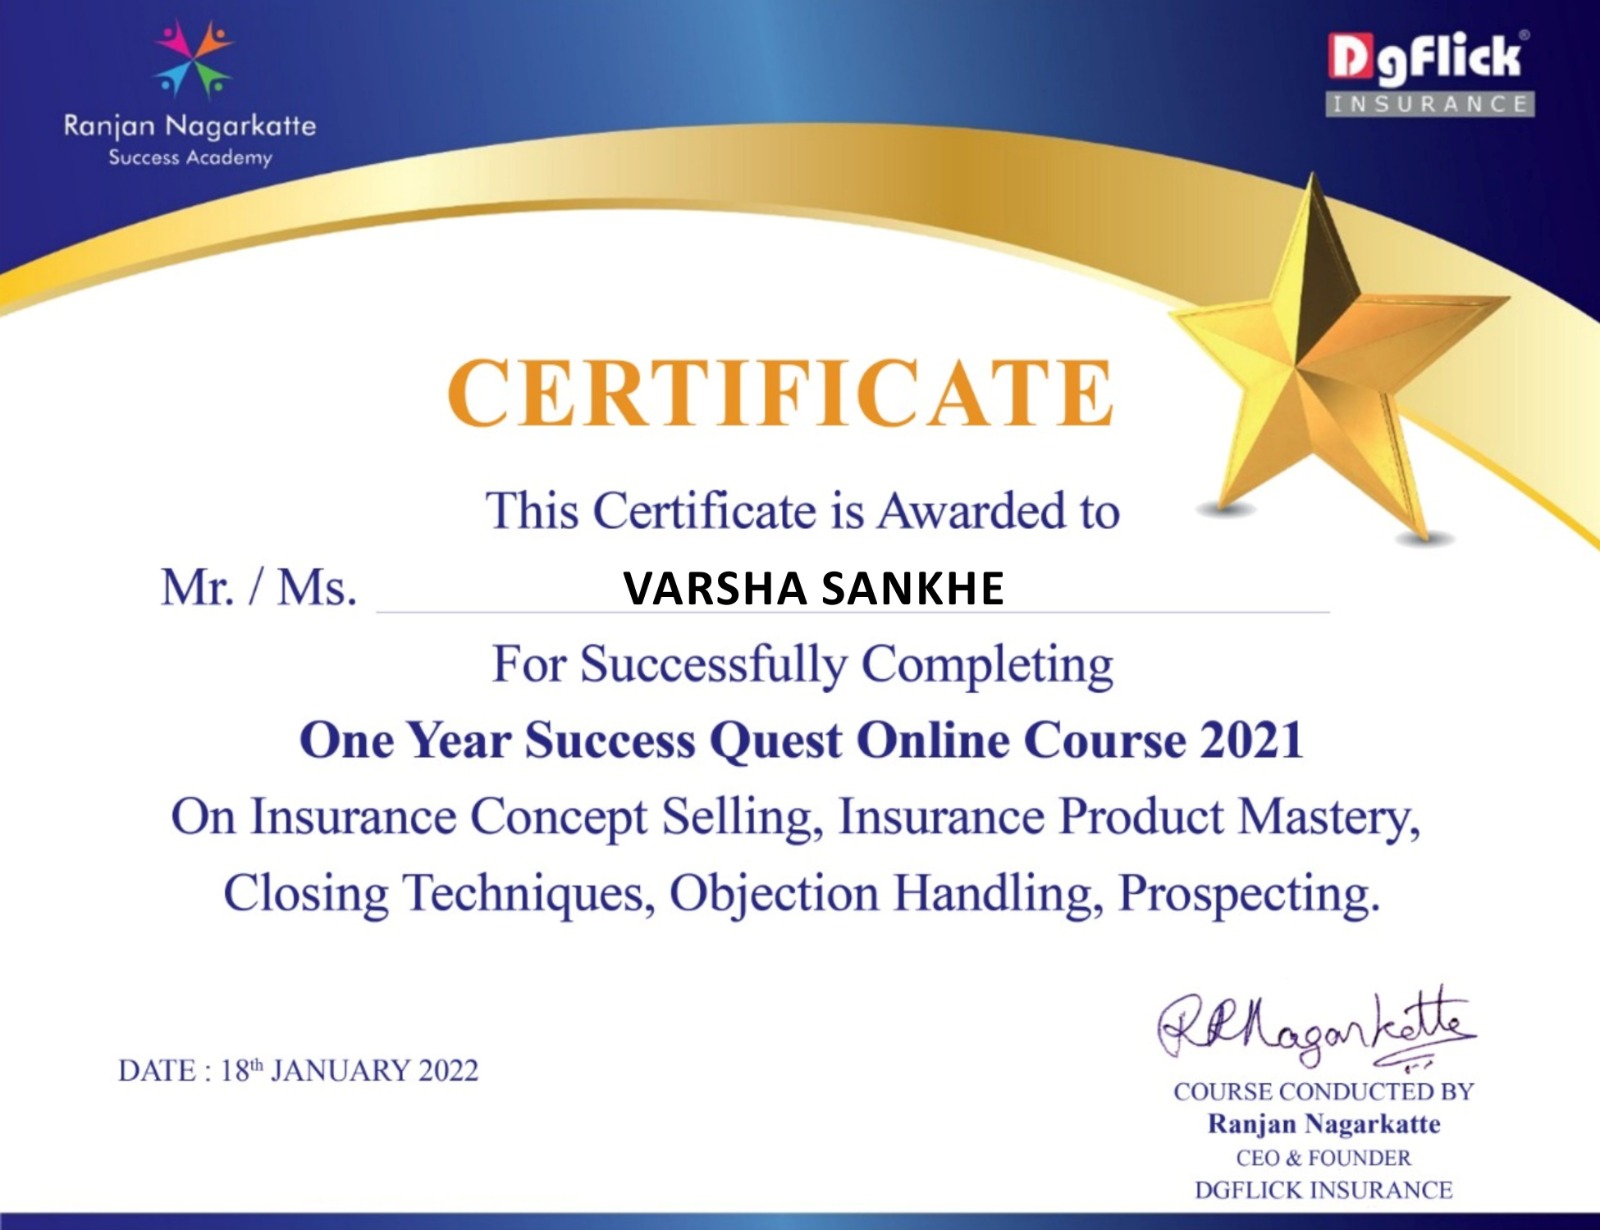 Success Quest Online  Course 2021